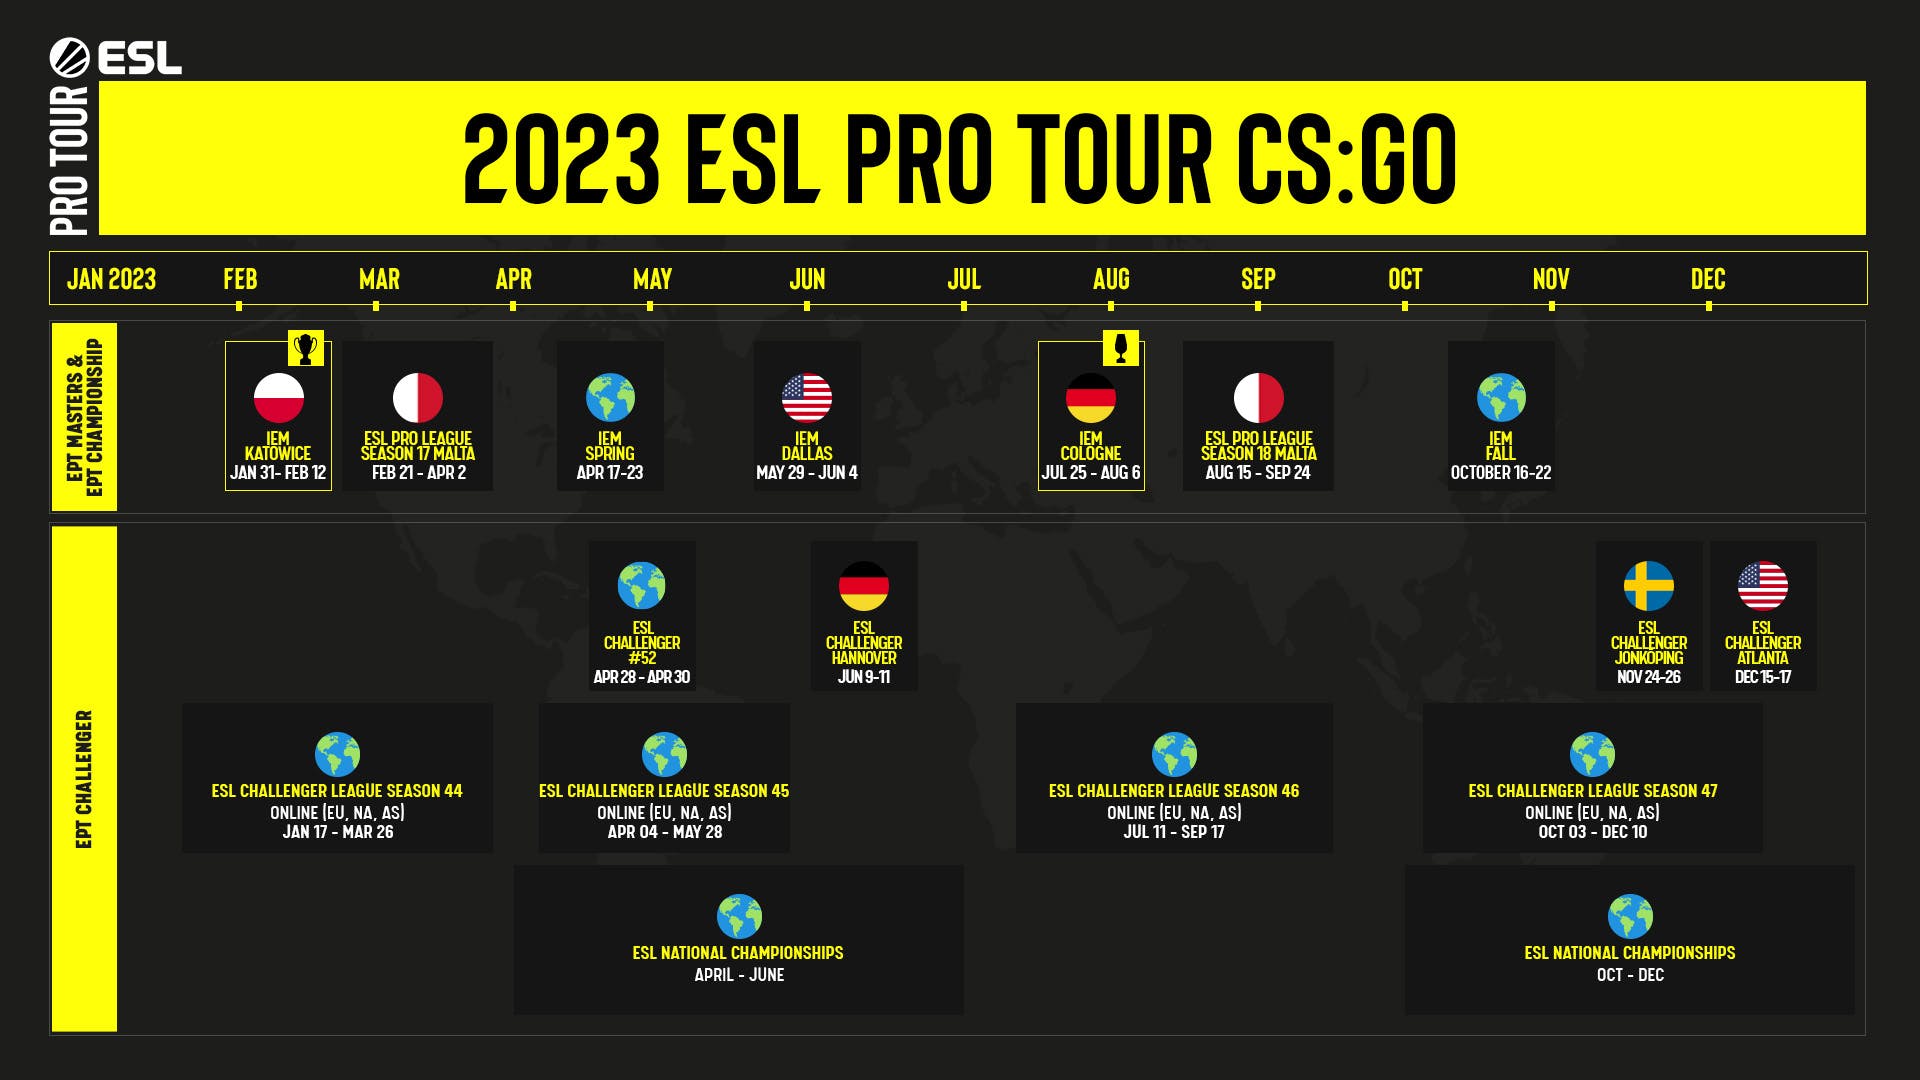 Обзор ESL Pro Tour: история и настоящее турнирной серии 2